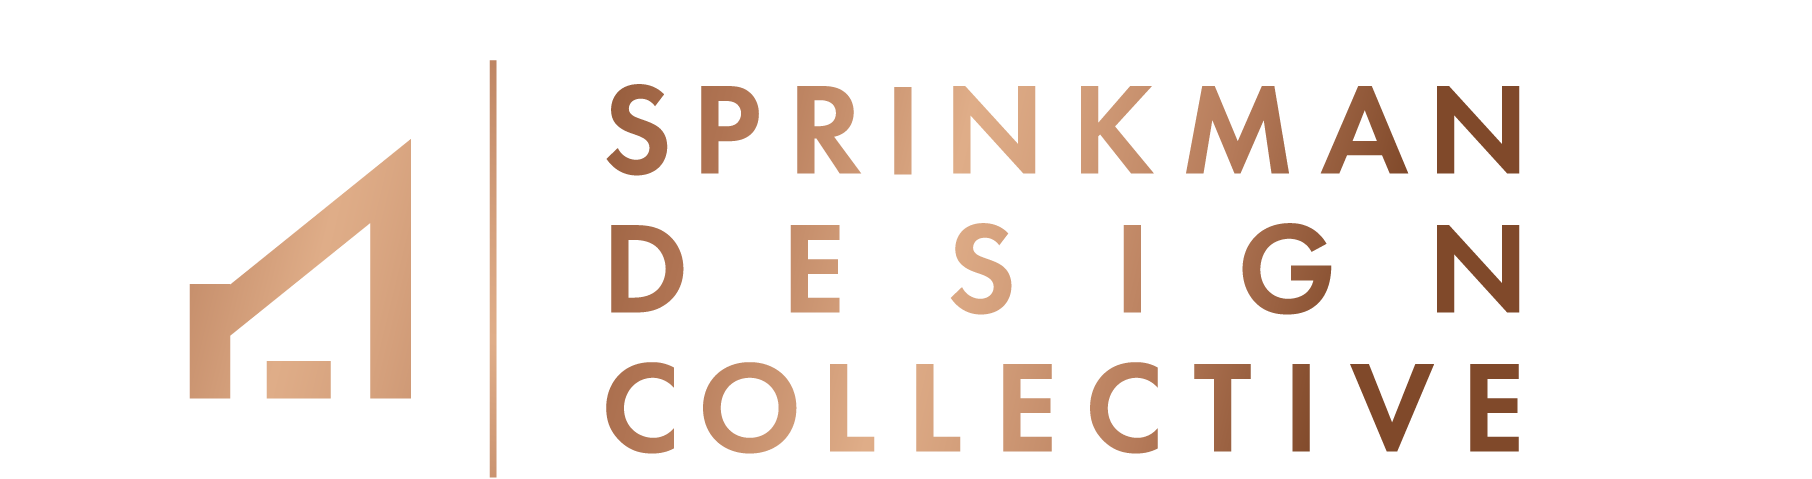 Sprinkman Design Collective Logo